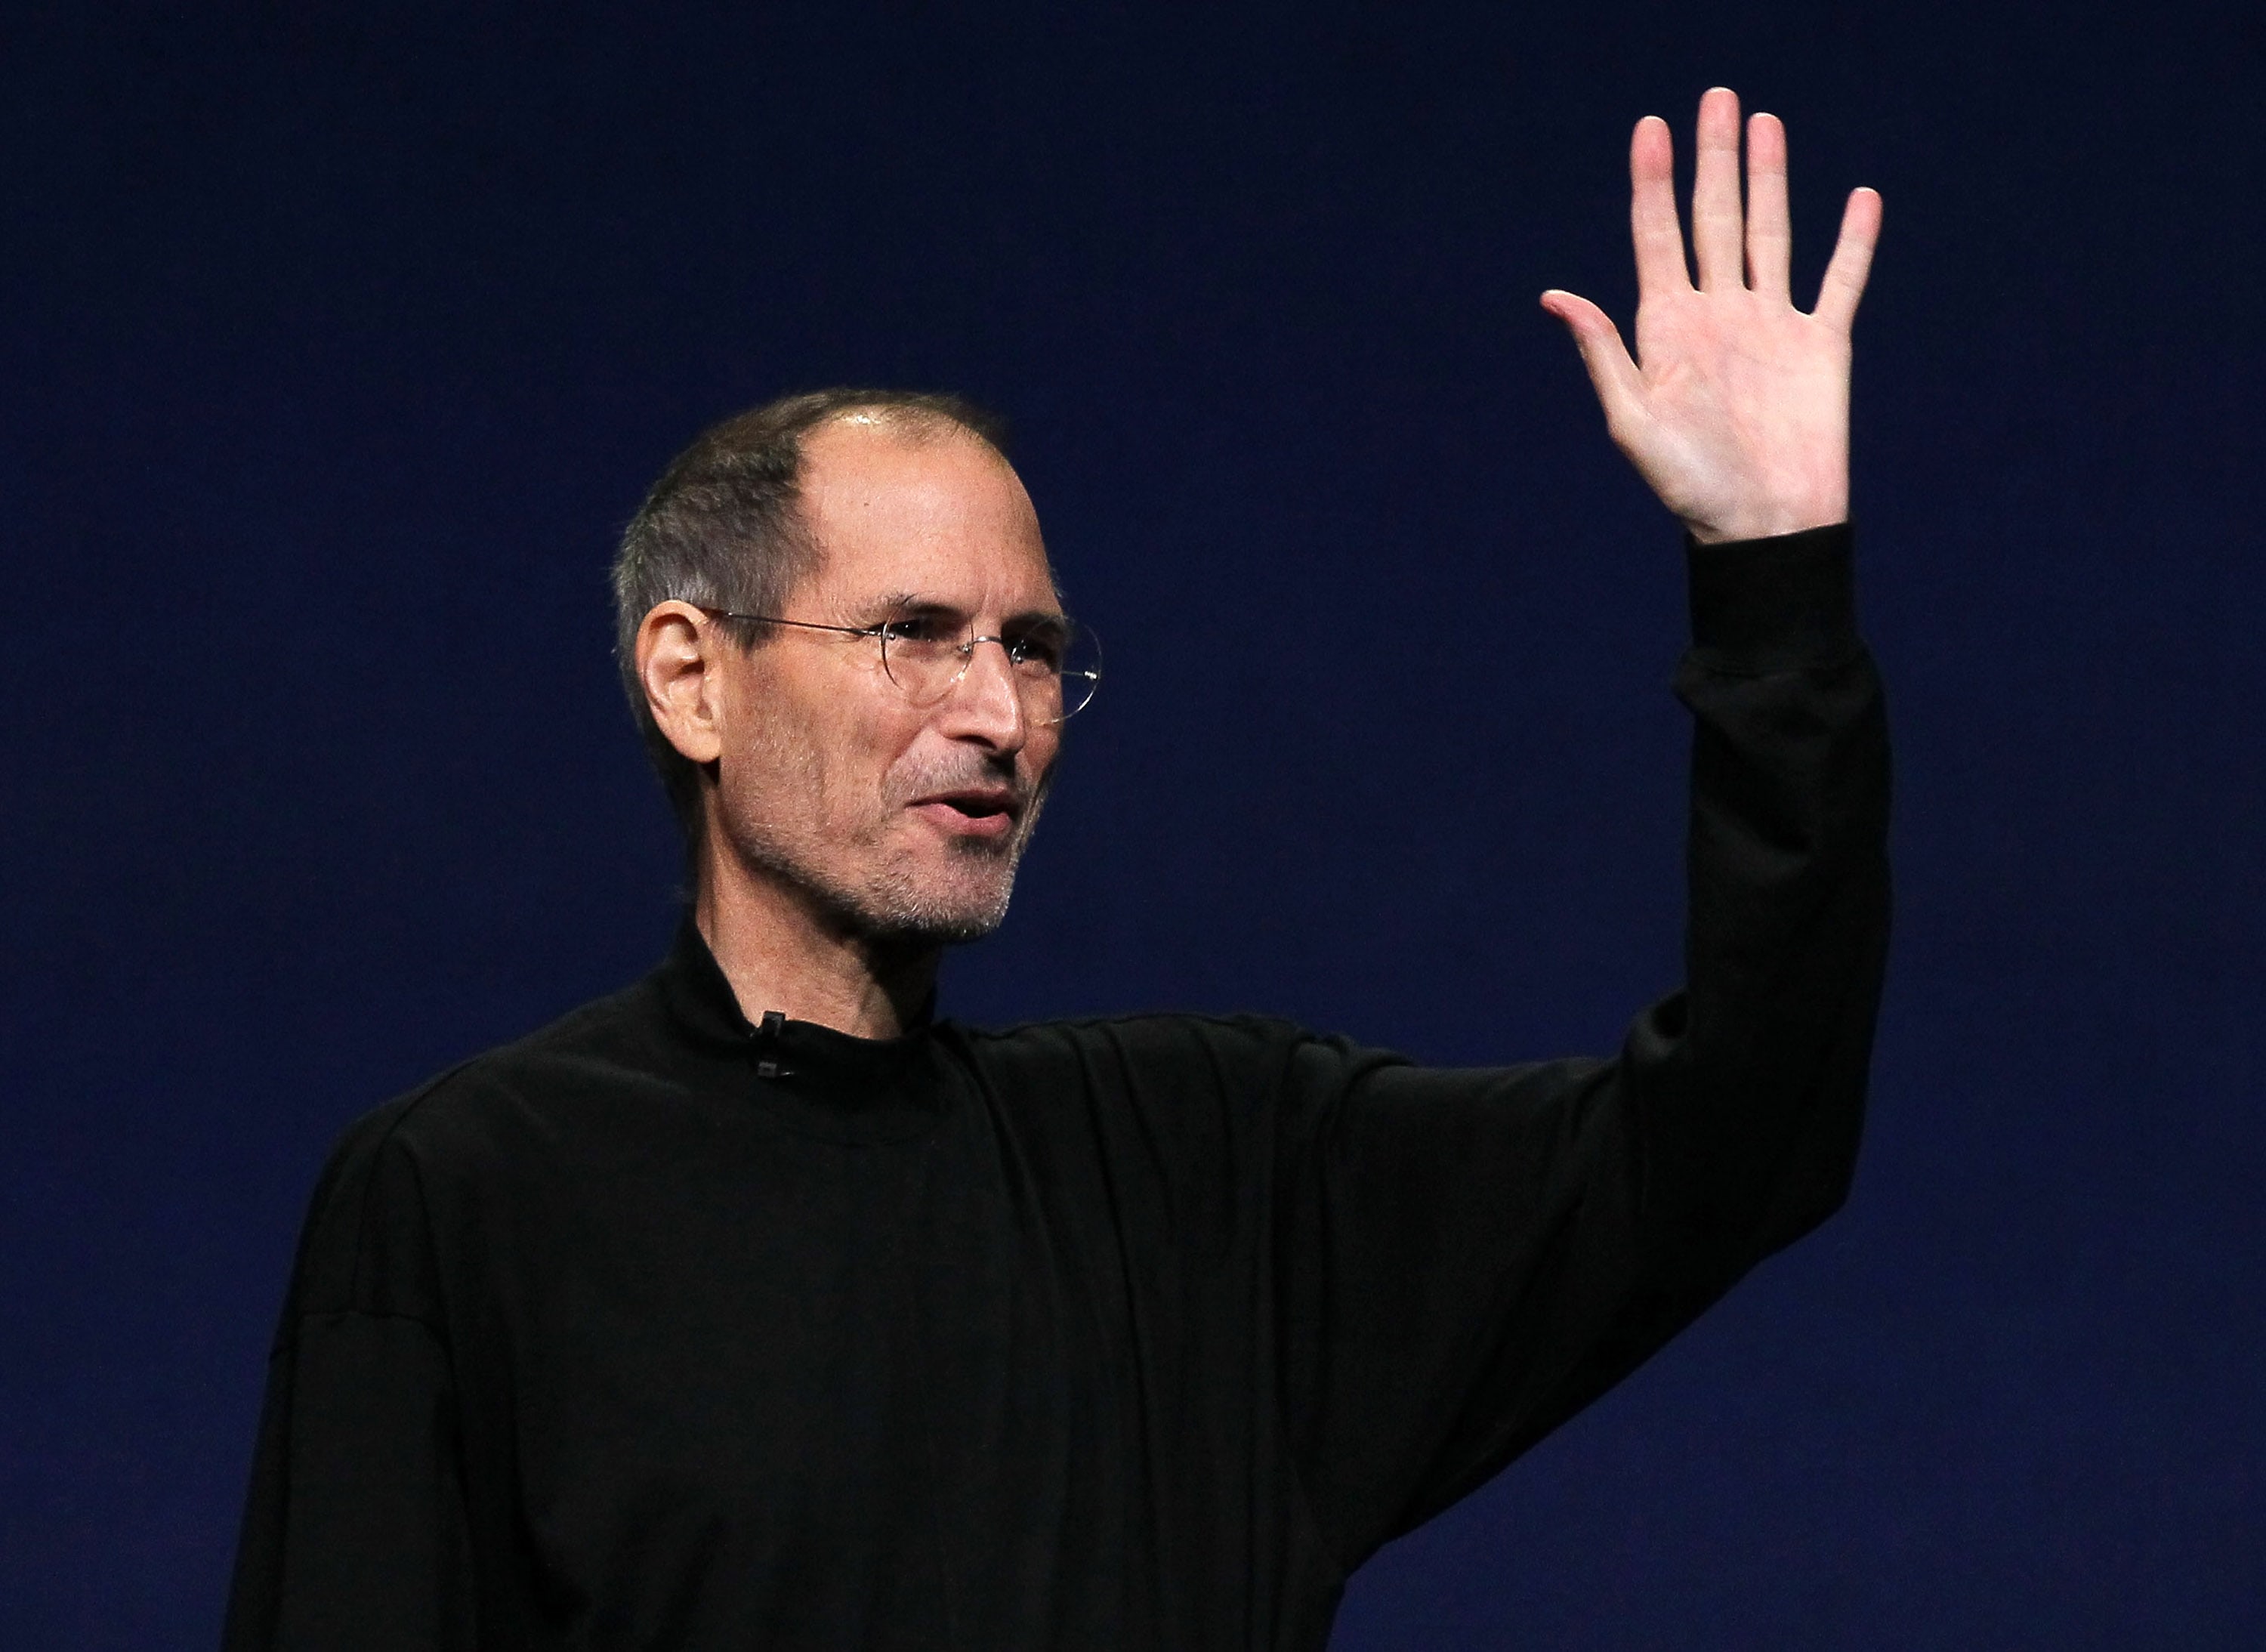 Apple شركة  5 أكتوبر 2021 2 تعليق
Apple إحياء ذكرى الراحل ستيف جوبز بفيلم متحرك والمزيد